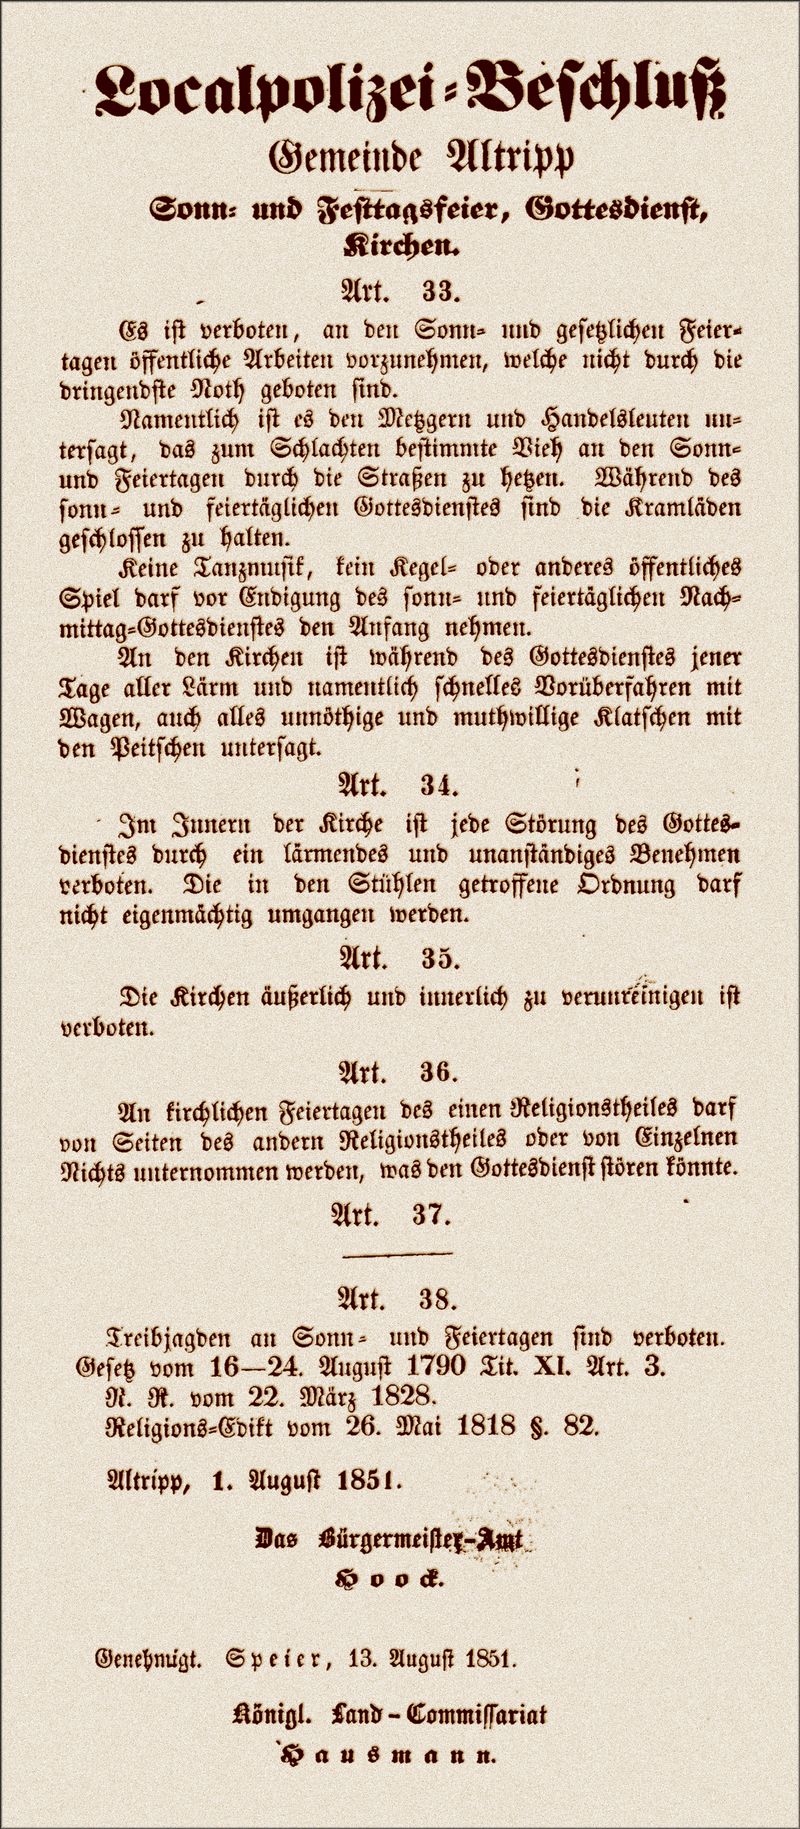 Localpolizei-Beschluß | Altripp, 1 August 1851